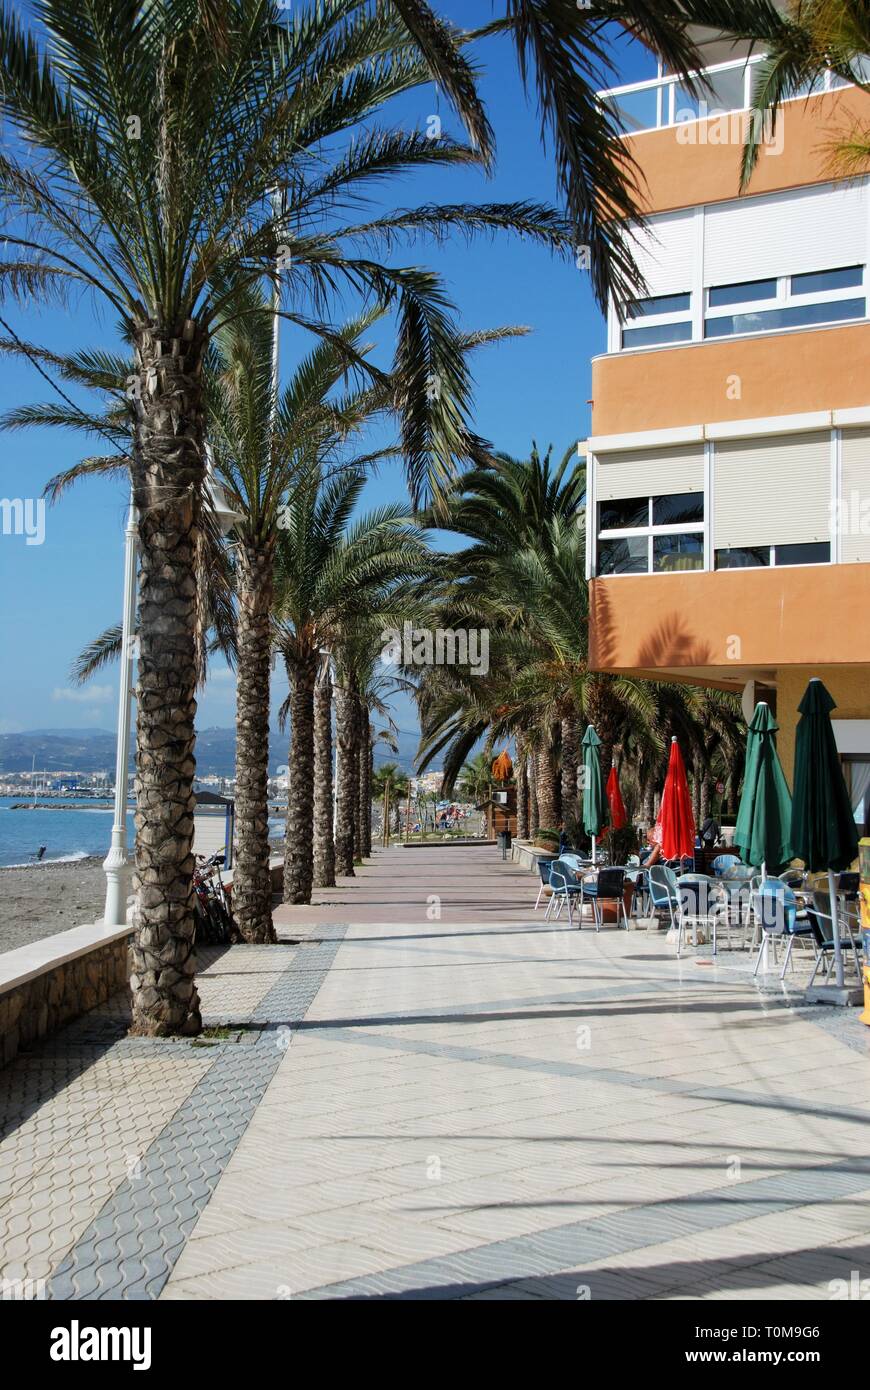 Blick entlang der Palmen gesäumten Promenade mit dem Meer und Strand auf der linken Seite, Lagos, Provinz Malaga, Andalusien, Spanien, Europa. Stockfoto